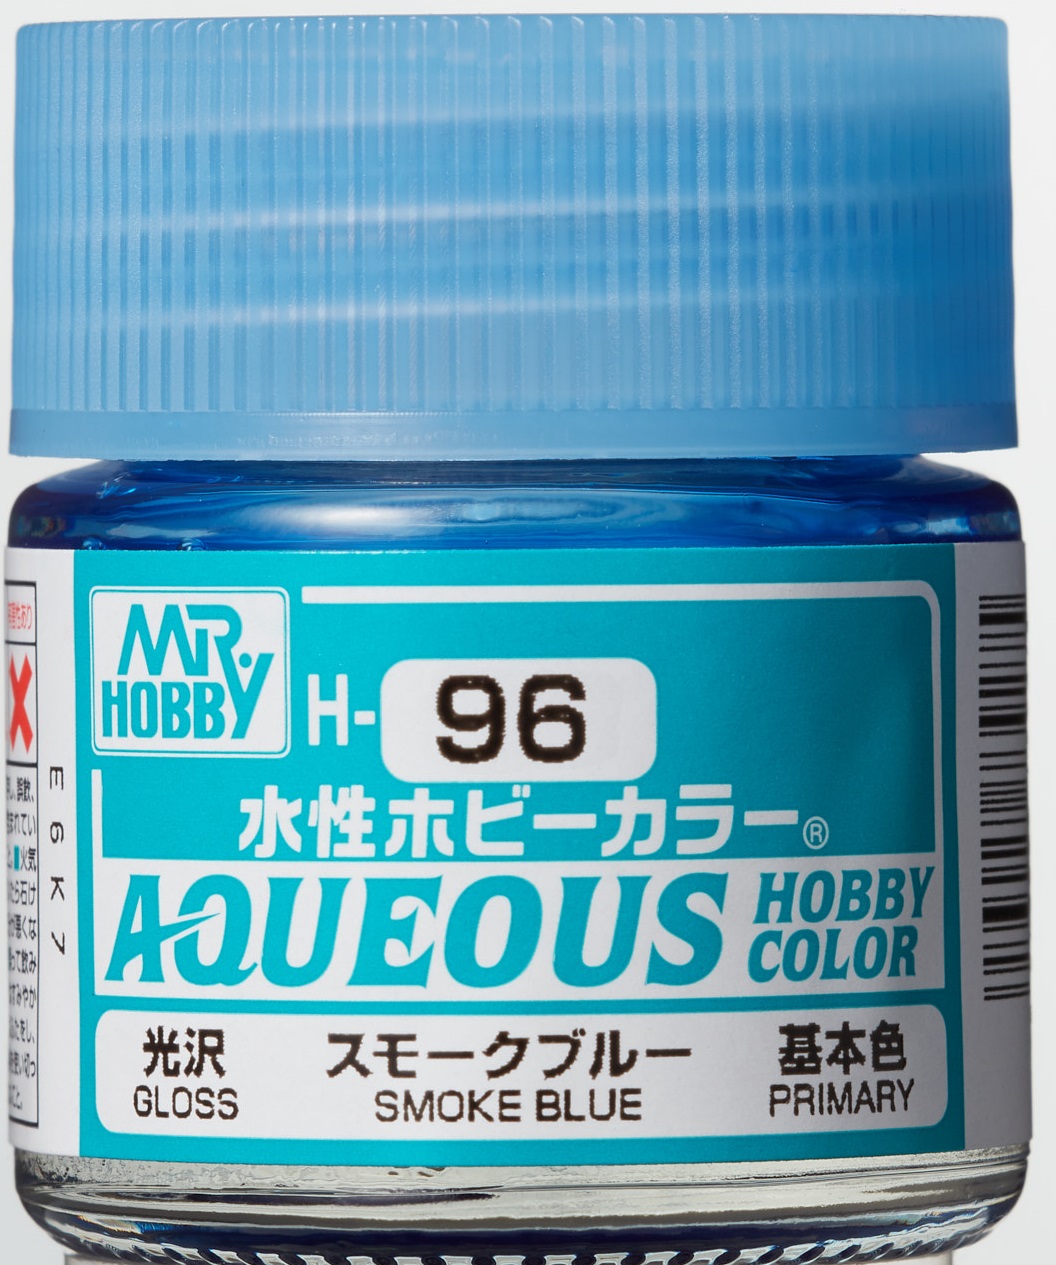 Mr. Aqueous Hobby Color - Smoke Blue - H96 - Rauch Blau Transparent